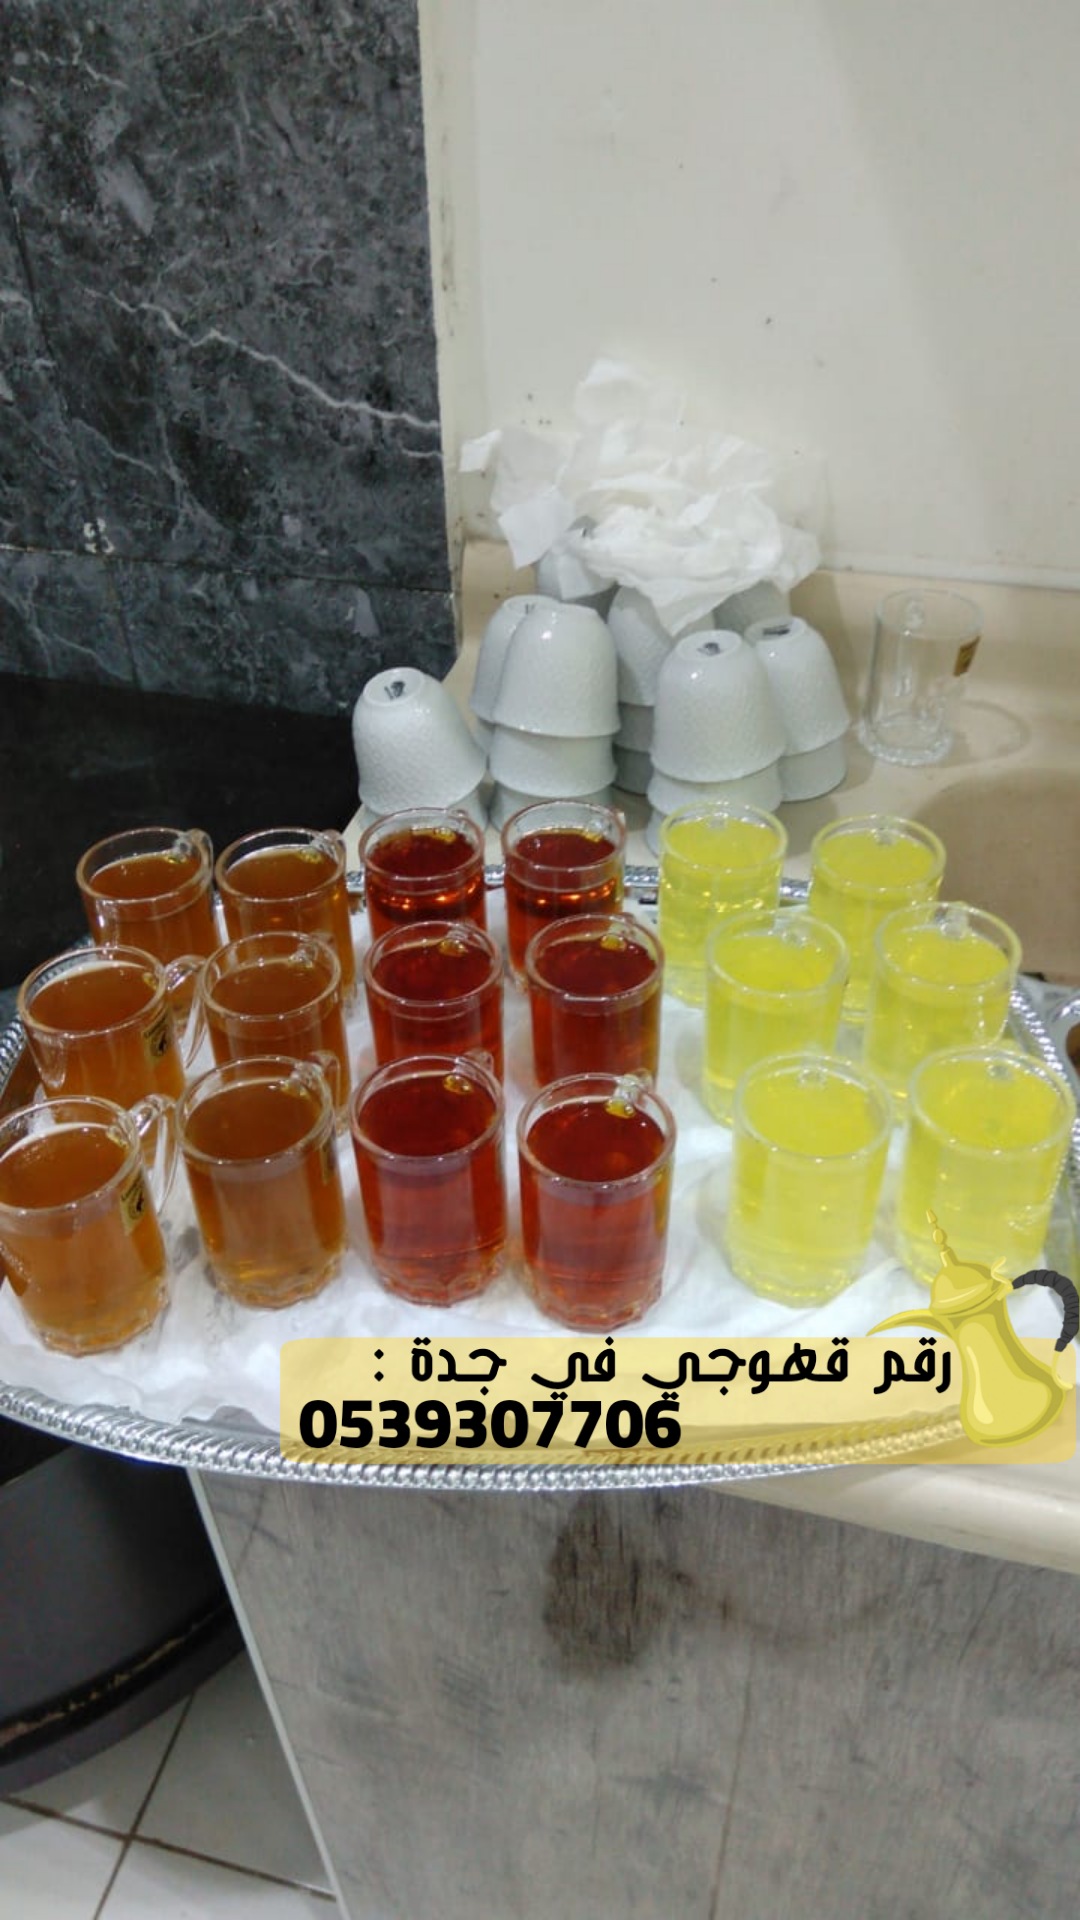 قهوجي و صبابين في جدة,0539307706